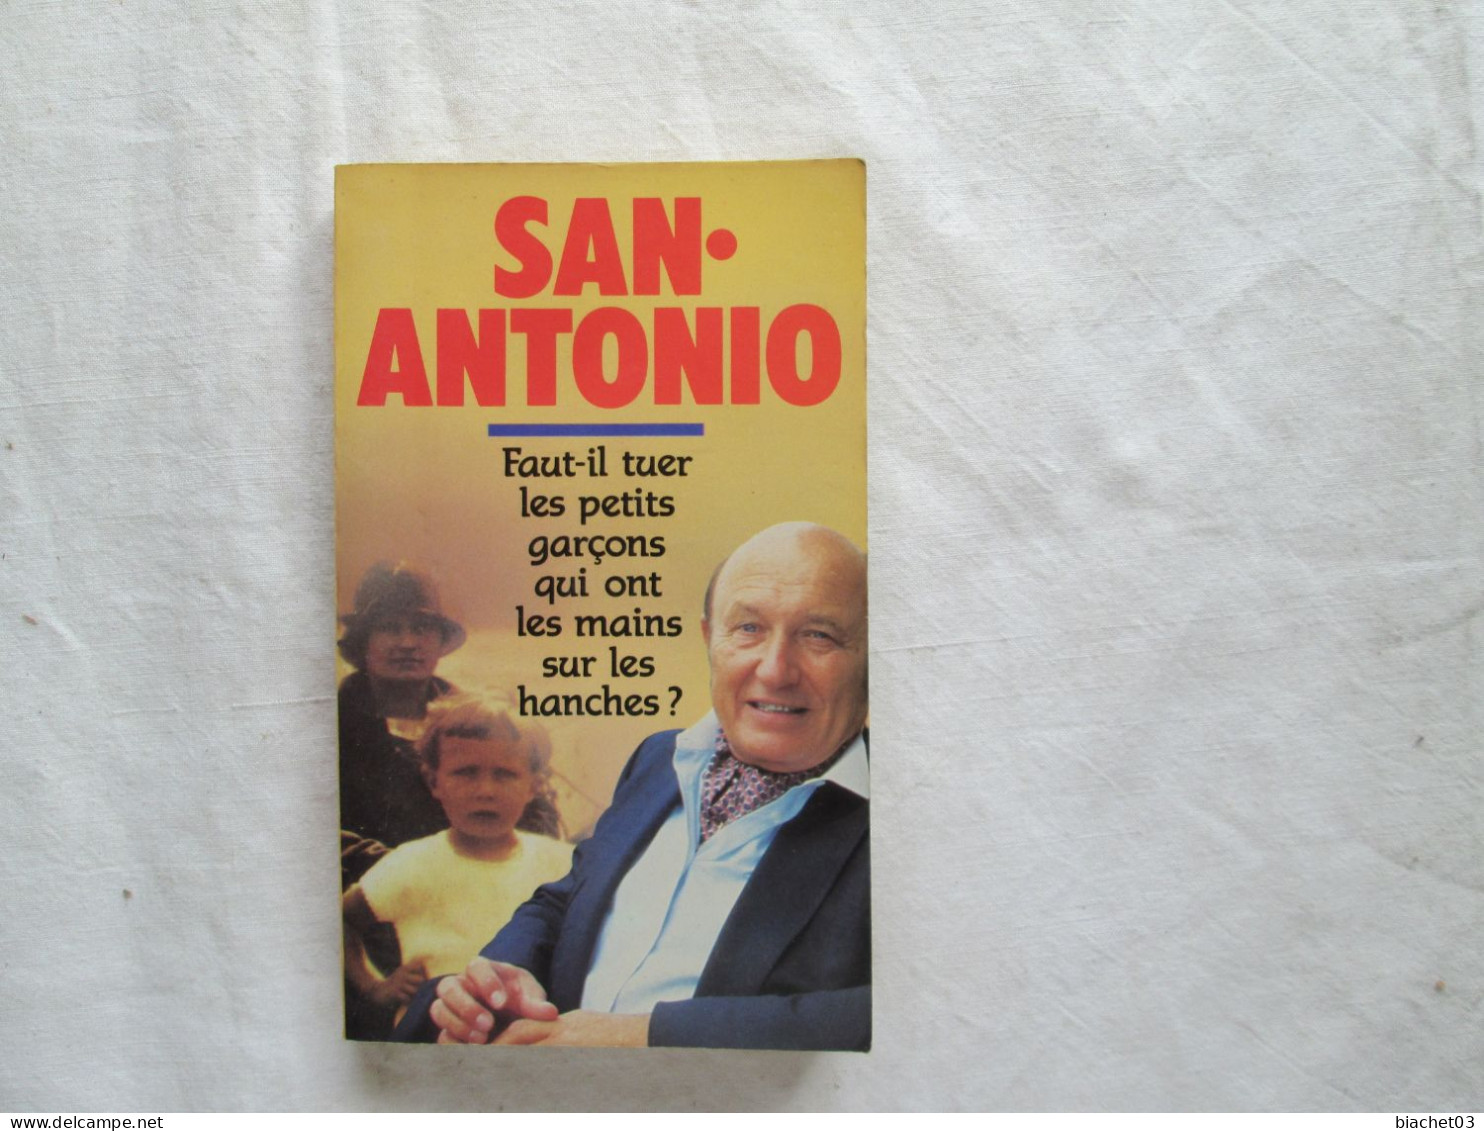 San-antonio - San Antonio